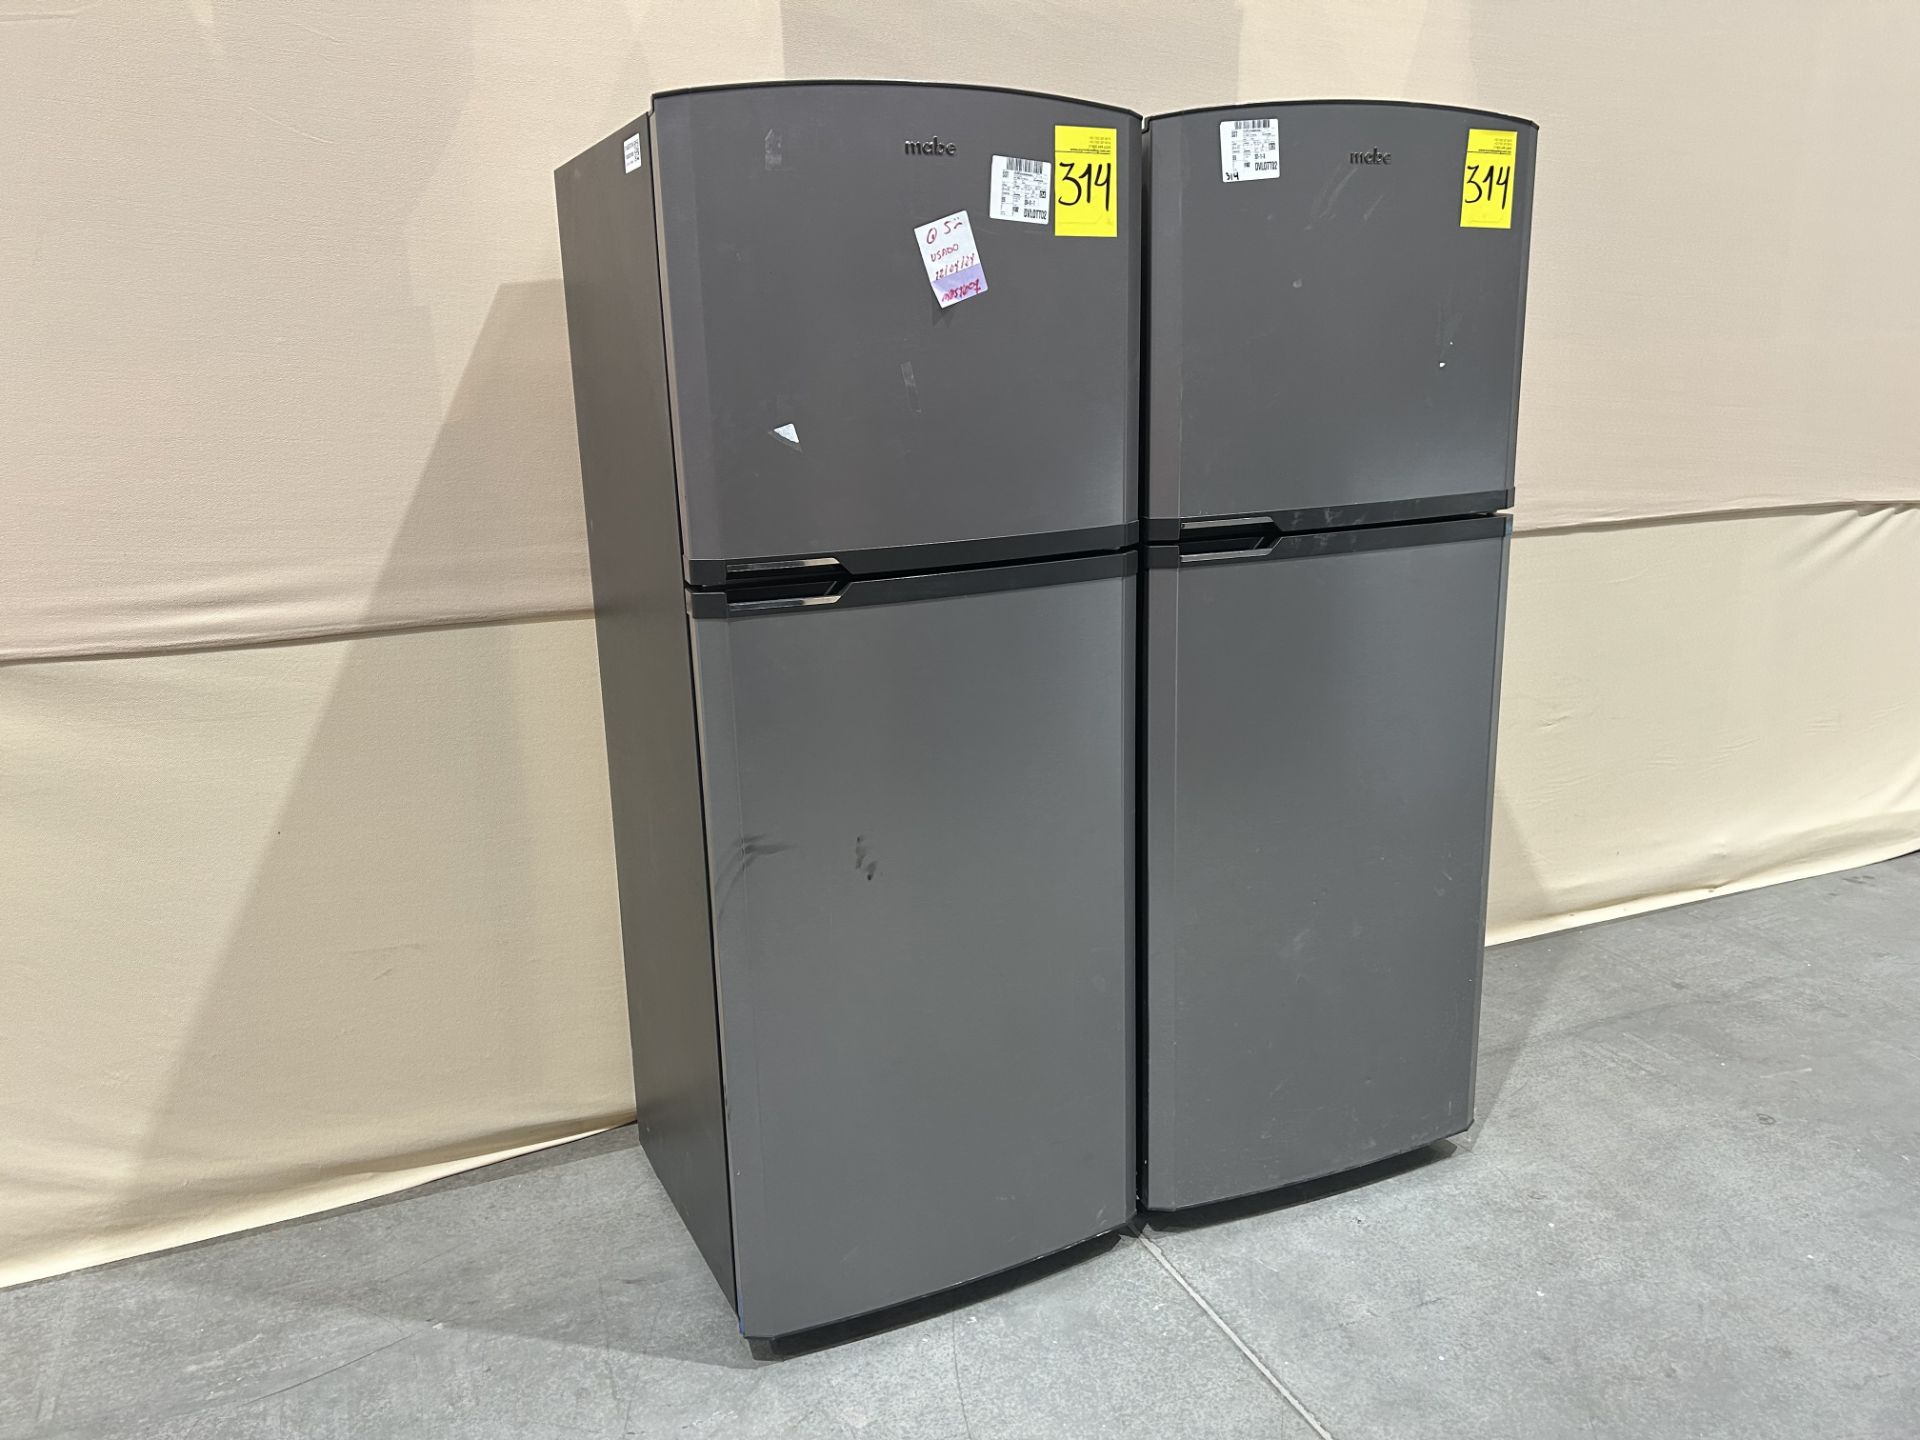 Lote de 2 refrigeradores contiene: 1 Refrigerador Marca MABE, Modelo RME360PVMRMA, Serie 822367, Co - Image 3 of 10